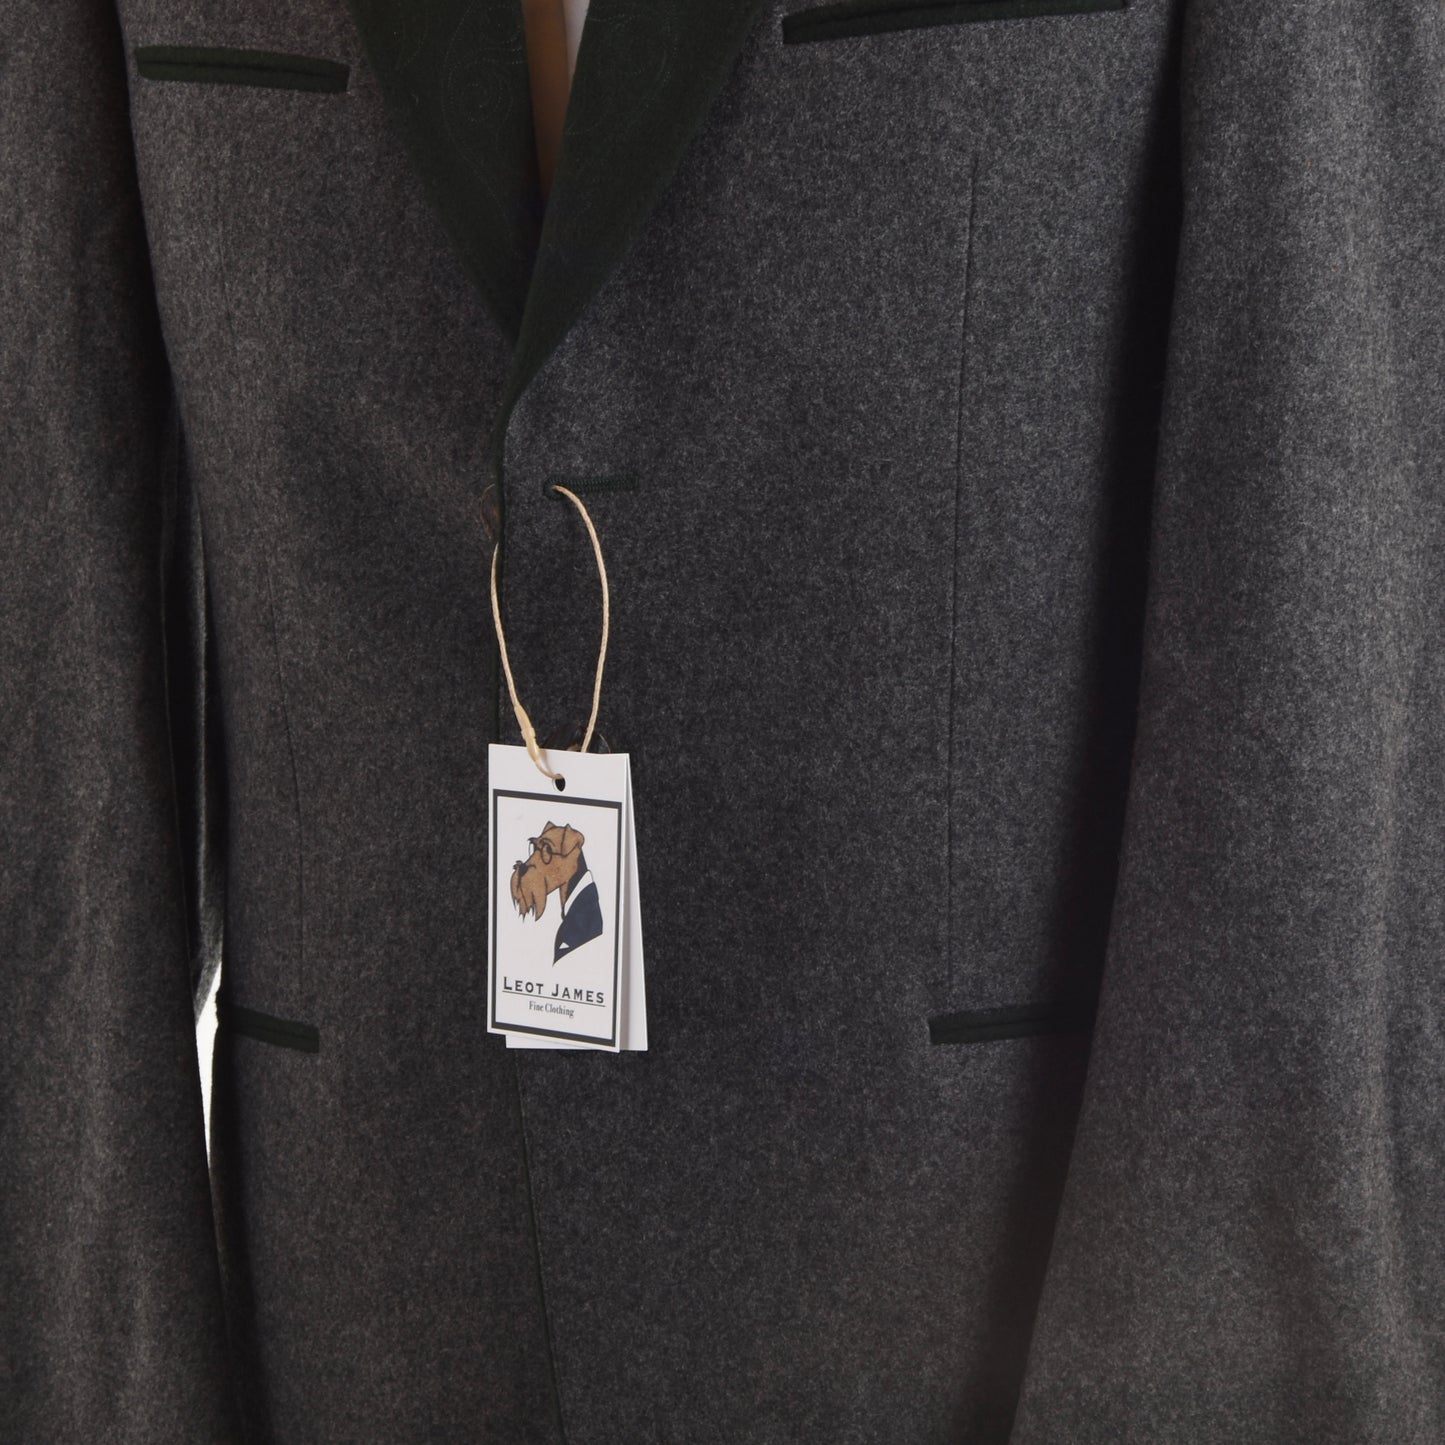 NOS Lodenfrey Trachtenanzug Wool Suit Size 90 - Grey